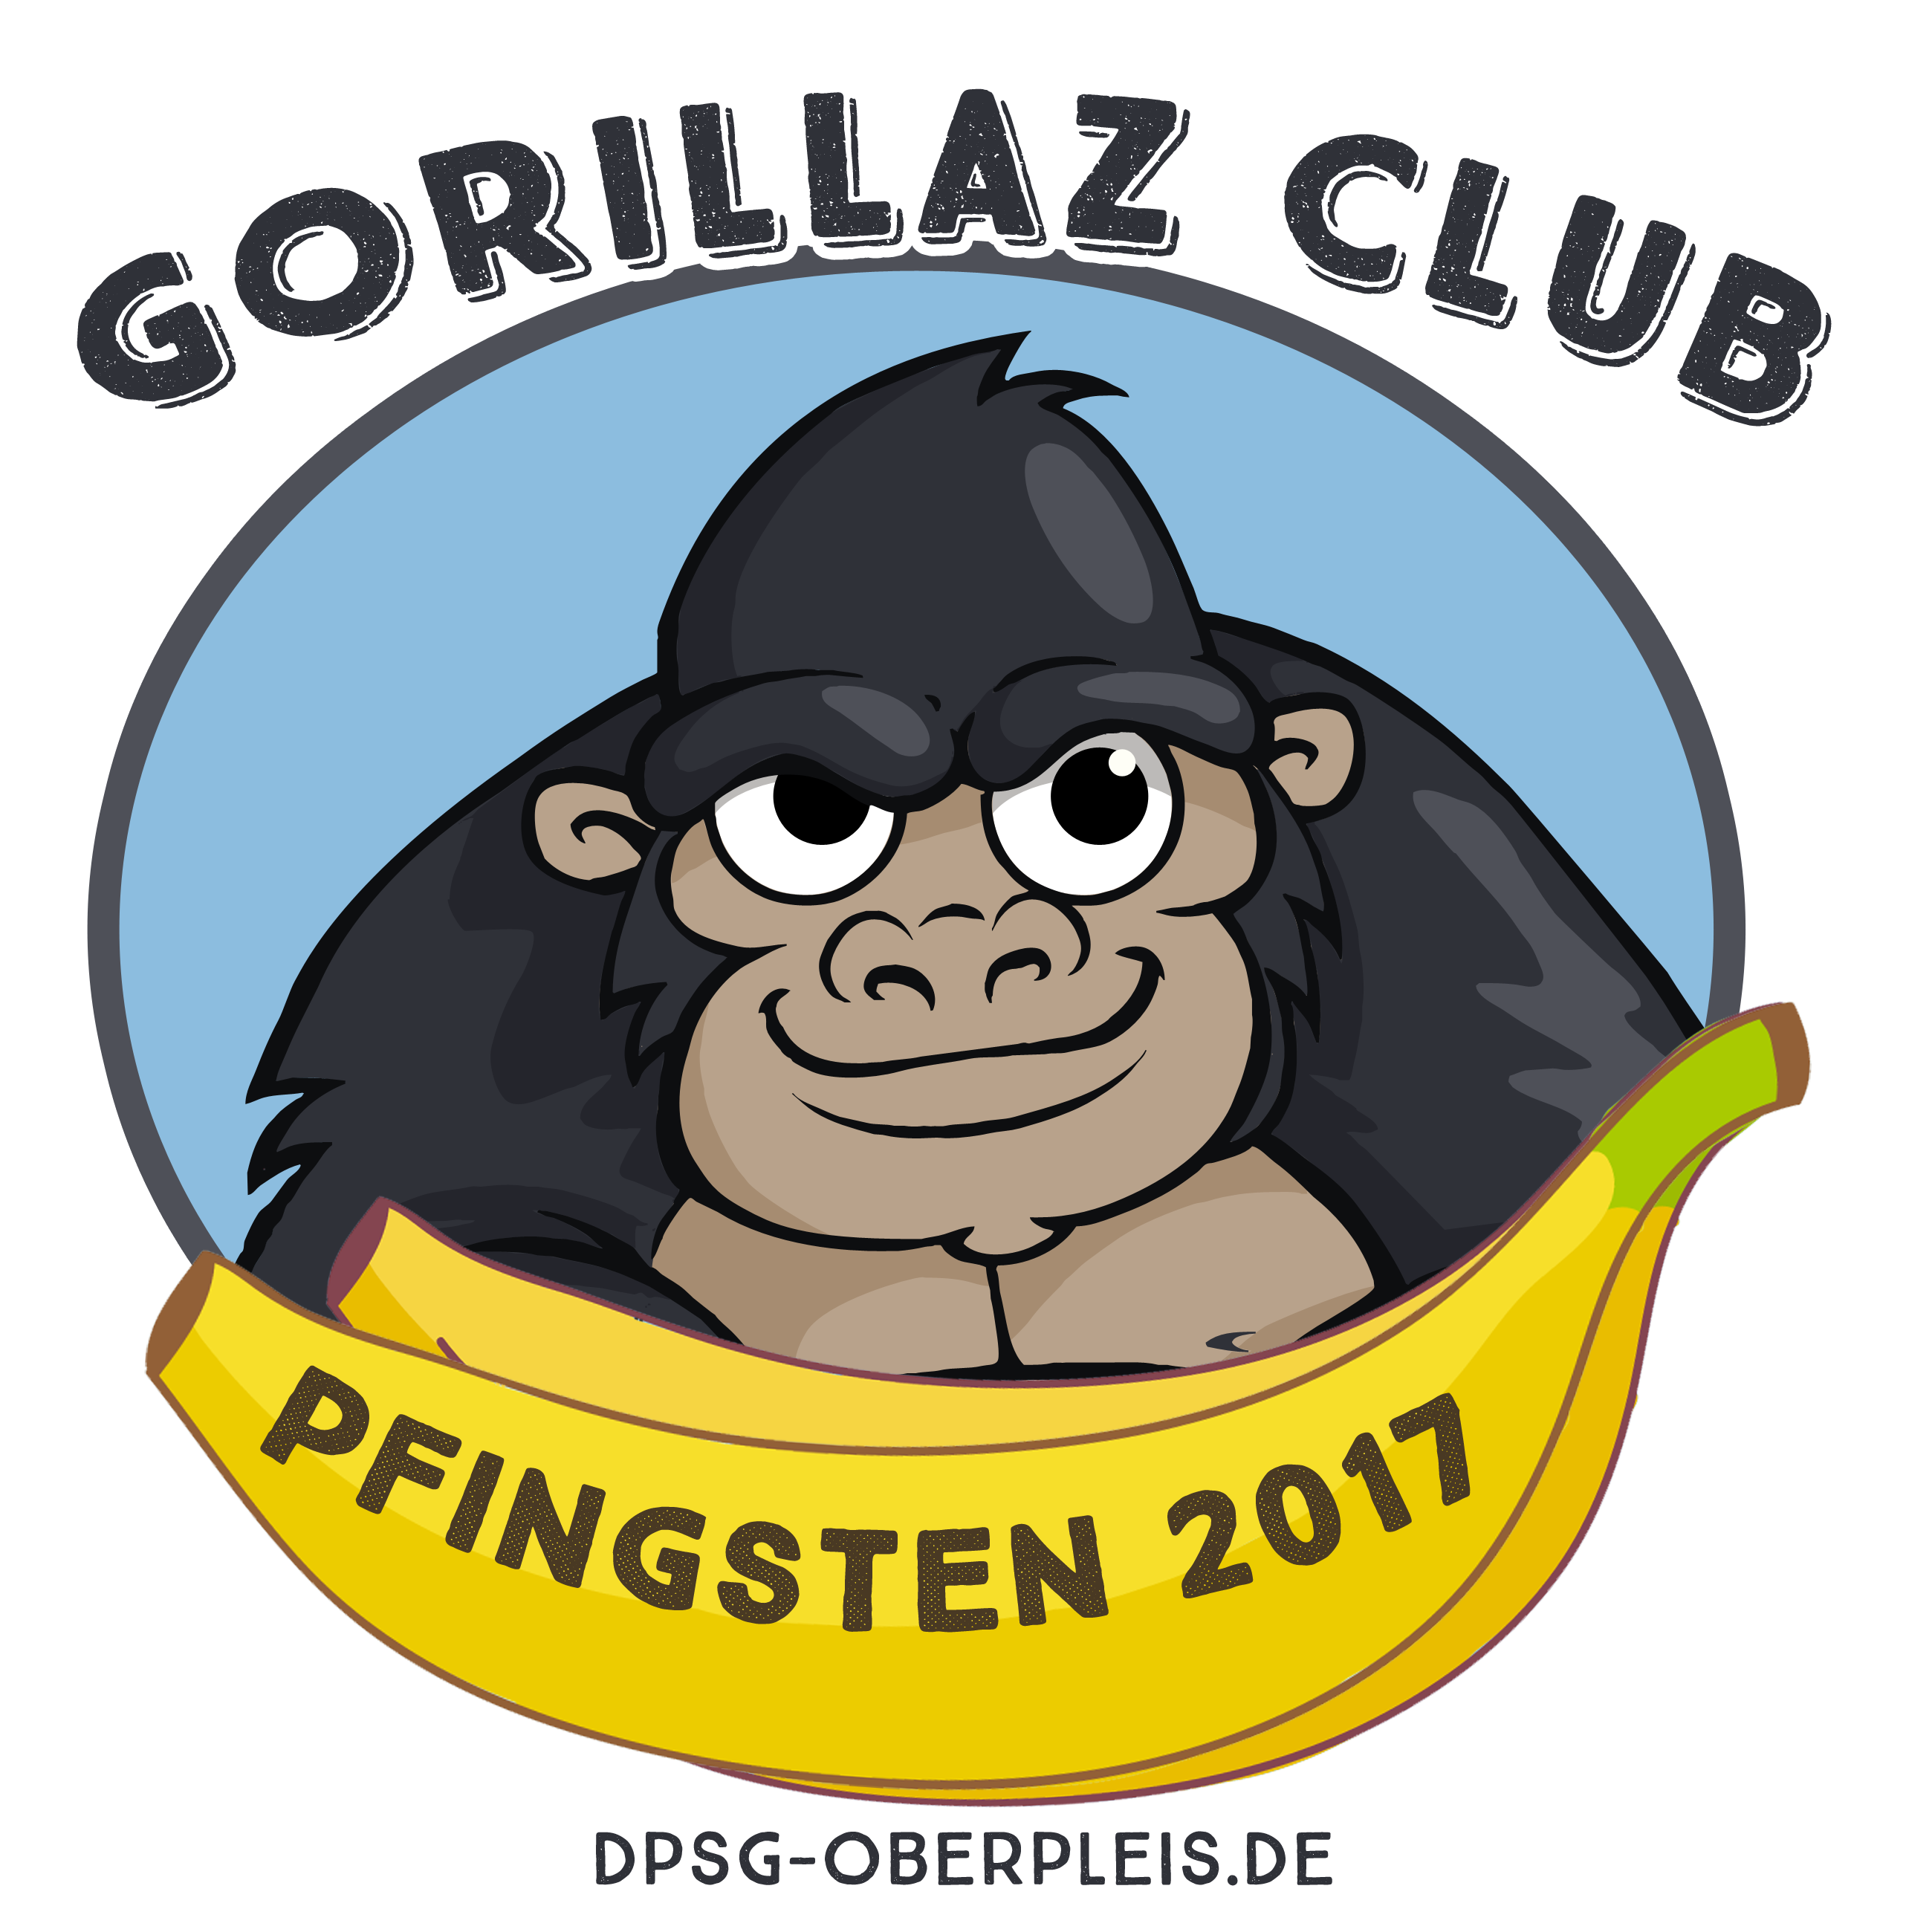 Gorillaz-Club